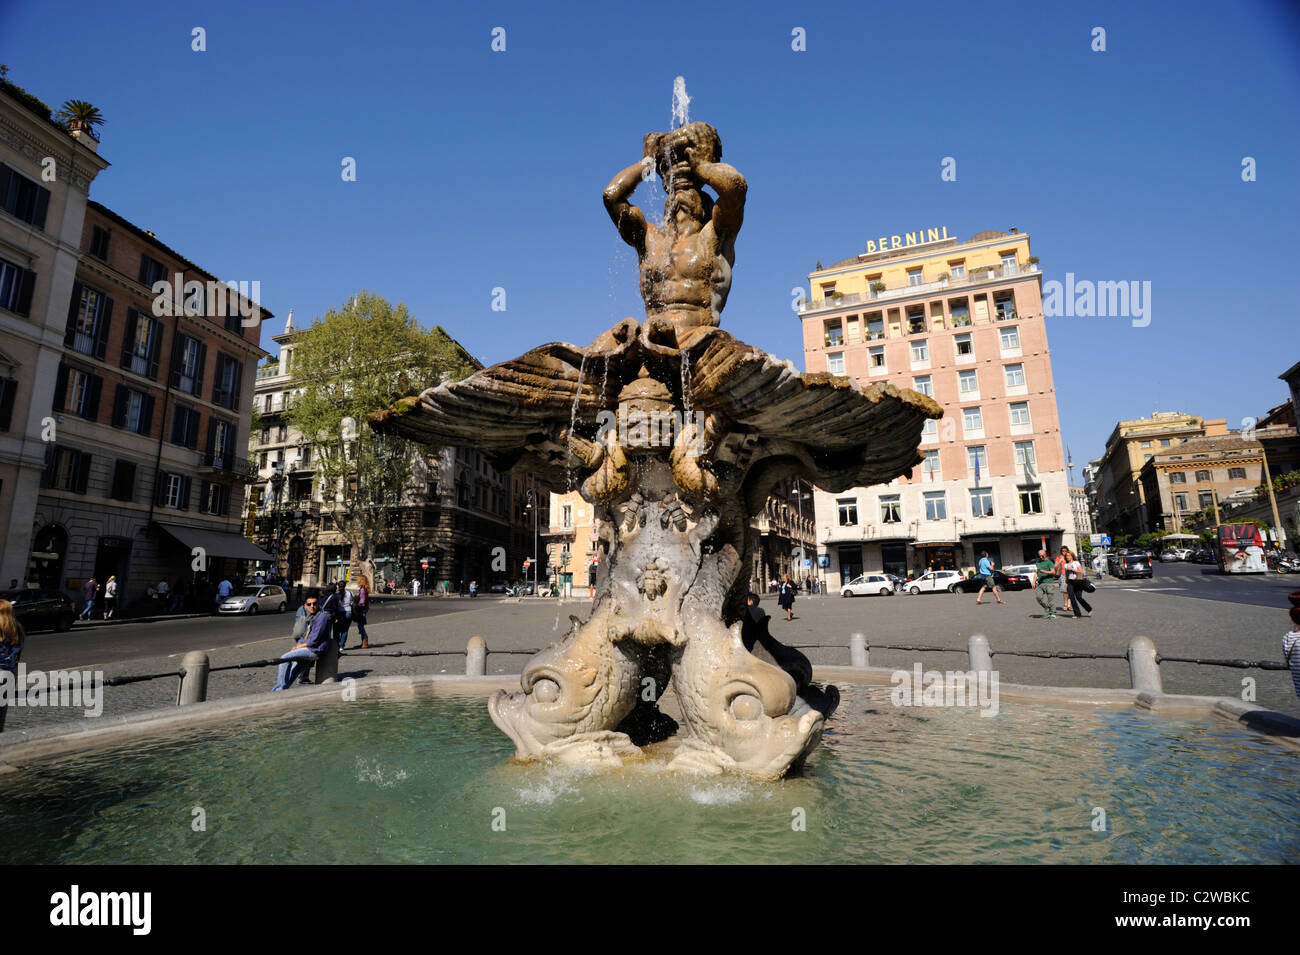 Italy, Rome, Piazza Barberini, Triton fountain Stock Photo